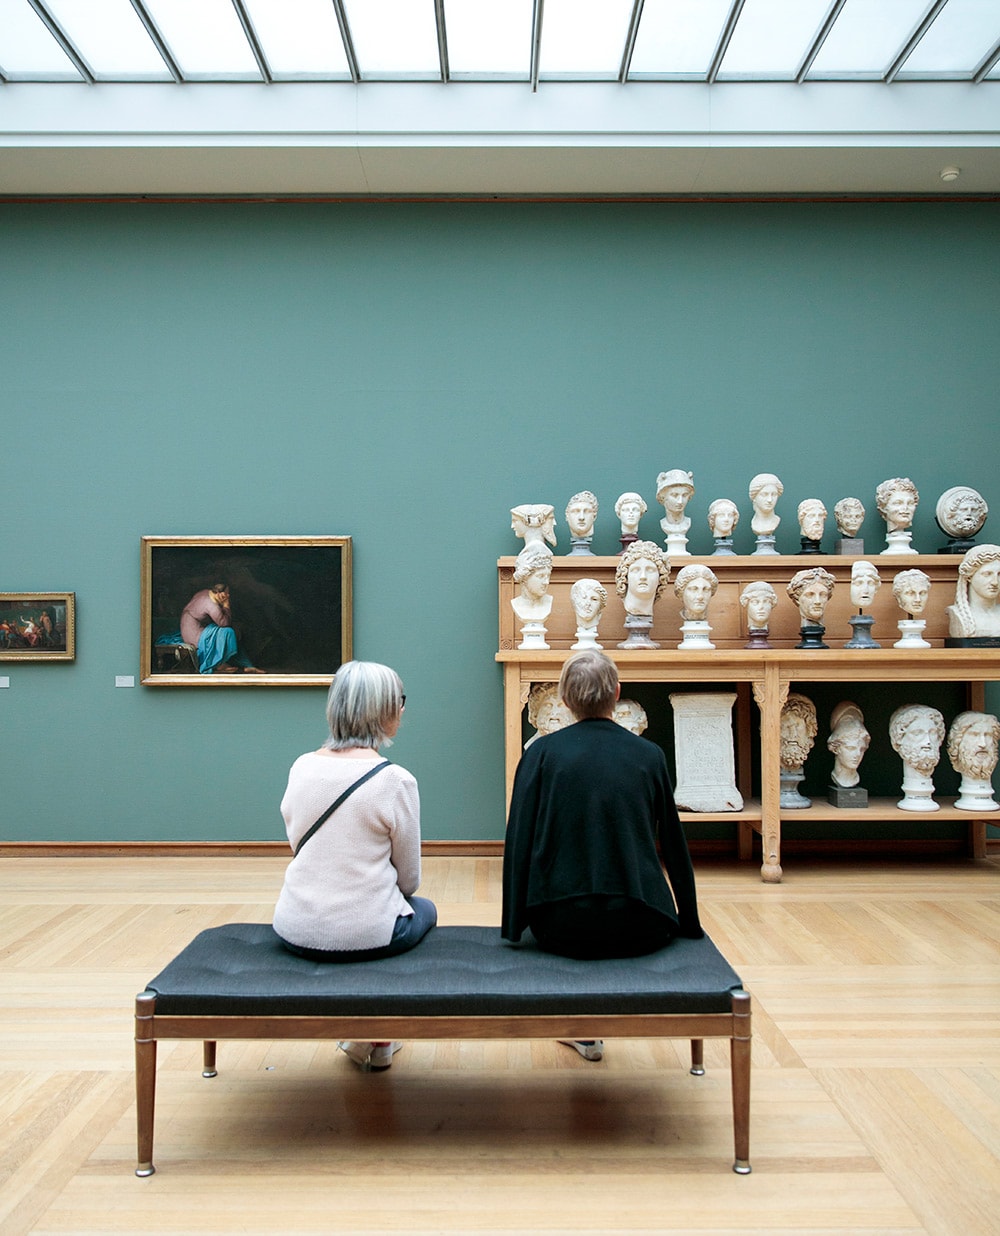 19世紀前半、「ゴールデン・エイジ」と呼ばれる時代の作品が並ぶ「ニイ・カールスベルグ・グリプトテク美術館」の展示室。